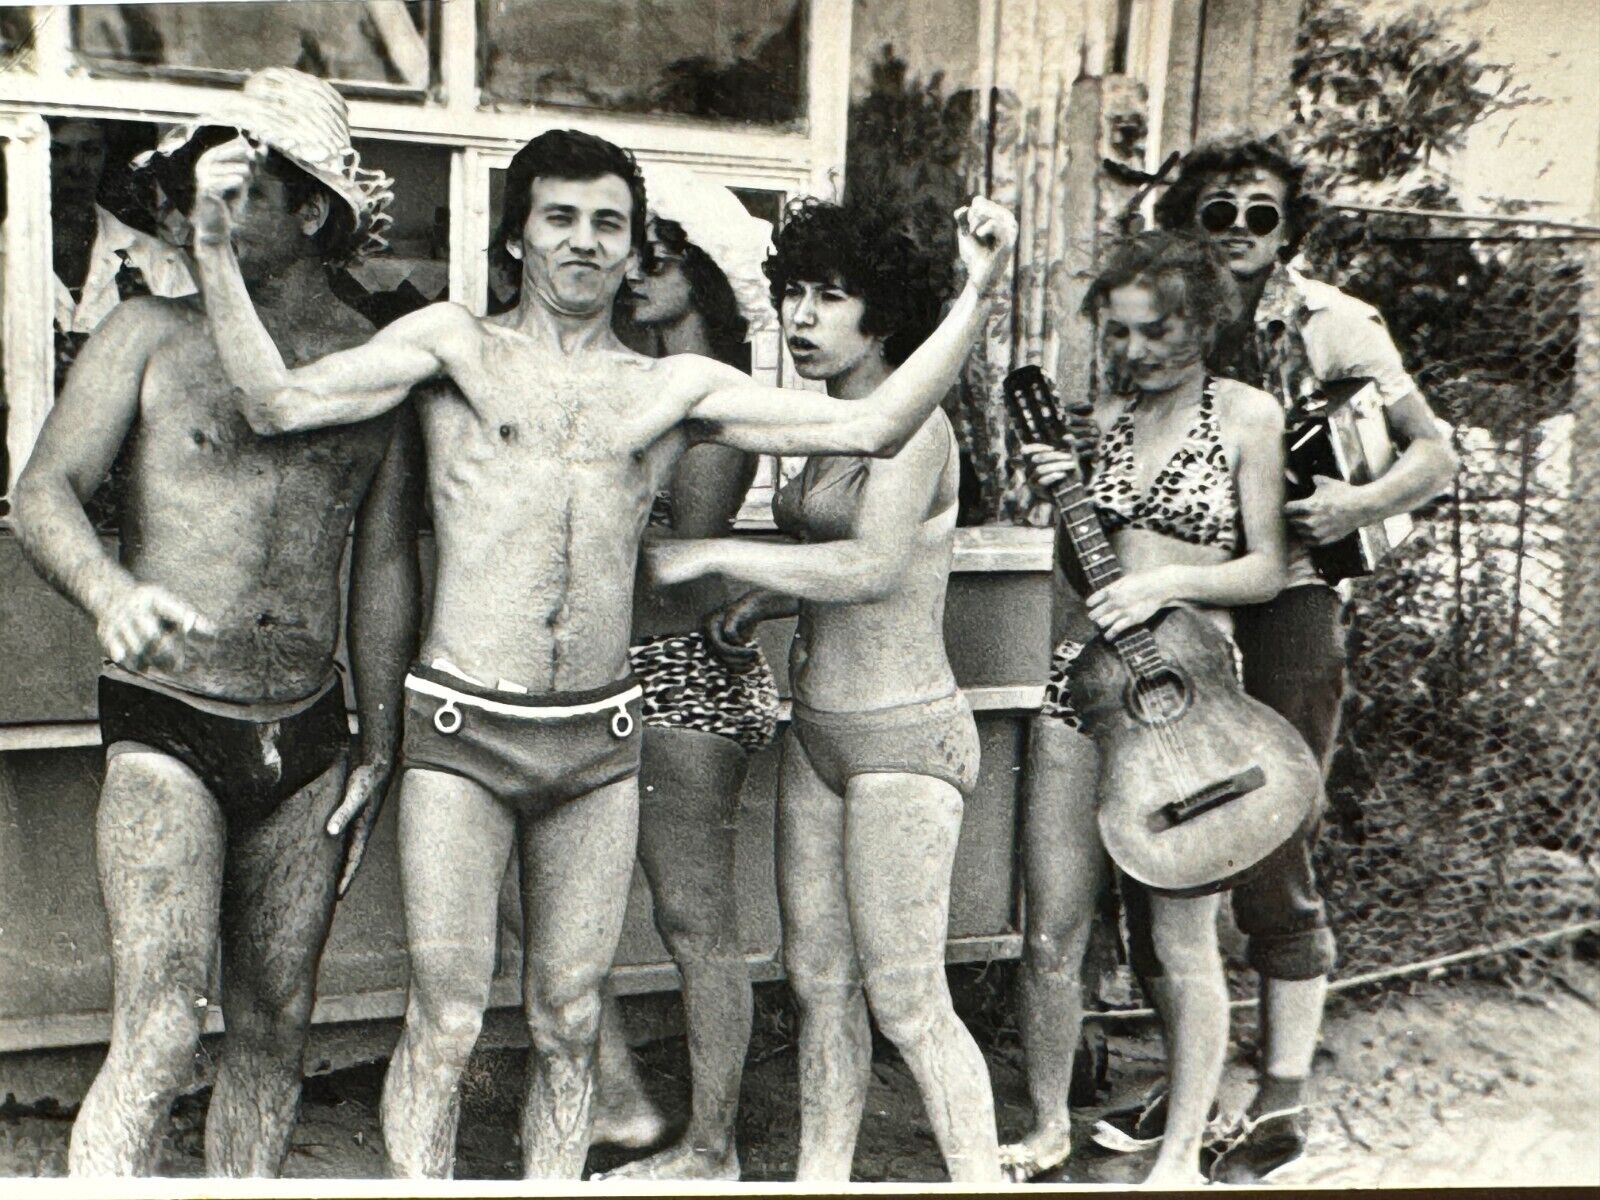 1980s Shirtless Guys Young Men Trunks Bulge Women Guitar Vintage Photo Snapshot